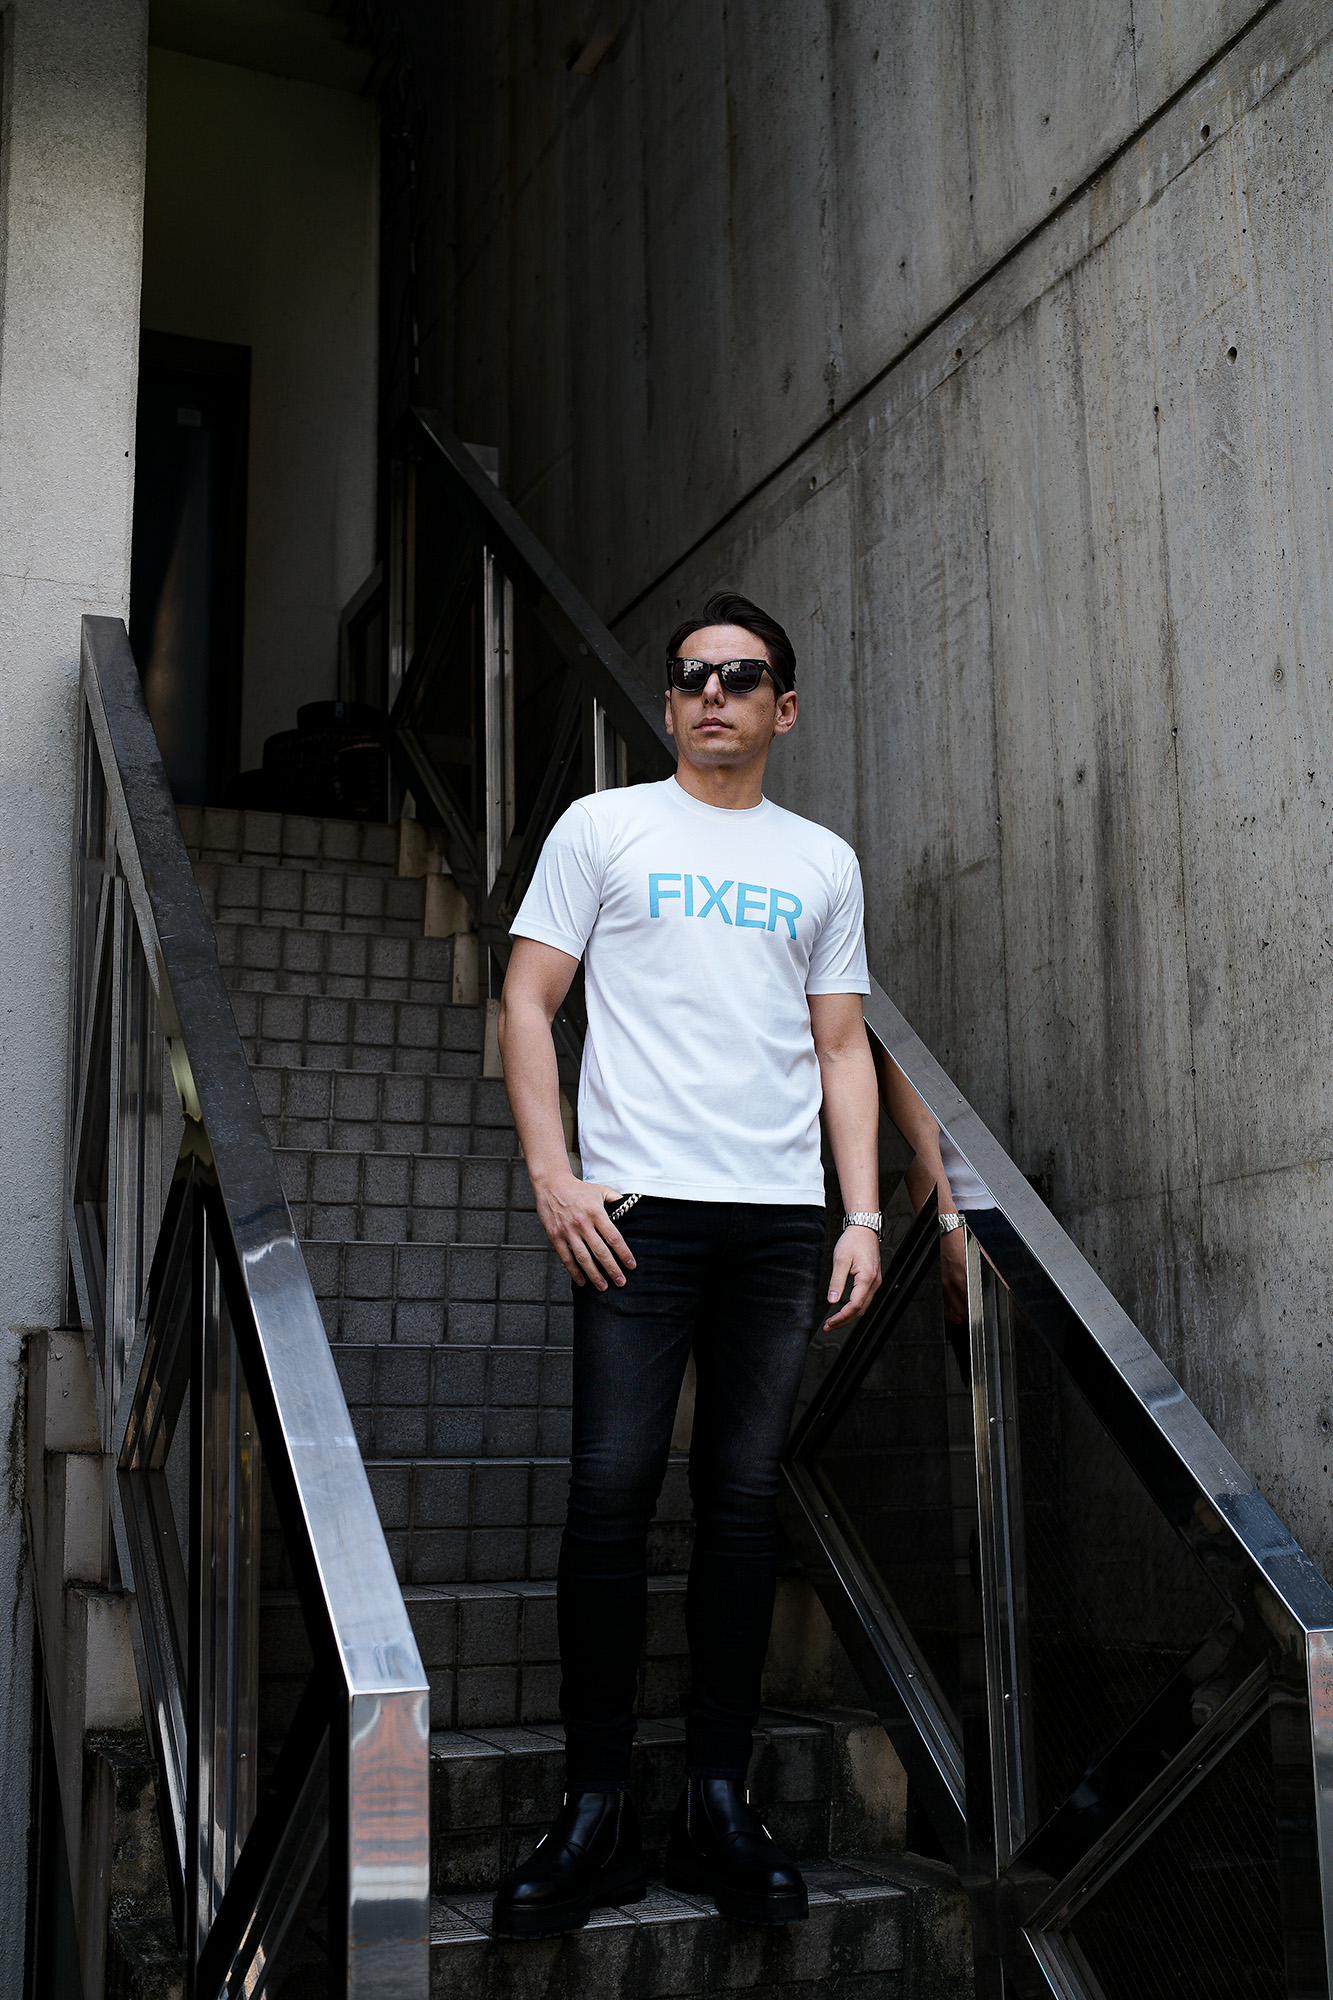 FIXER (フィクサー) FTS-02 FIXER Print Crew Neck T-shirt プリント Tシャツ WHITE × SAX (ホワイト × サックス)  【ご予約開始】【2024.3.18(Mon)～2024.3.31(Sun)】 フィクサー エフティーエス02 プリントクルーネック Tシャツ ブラック サックス 東京限定 愛知 名古屋 Alto e Diritto altoediritto アルトエデリット